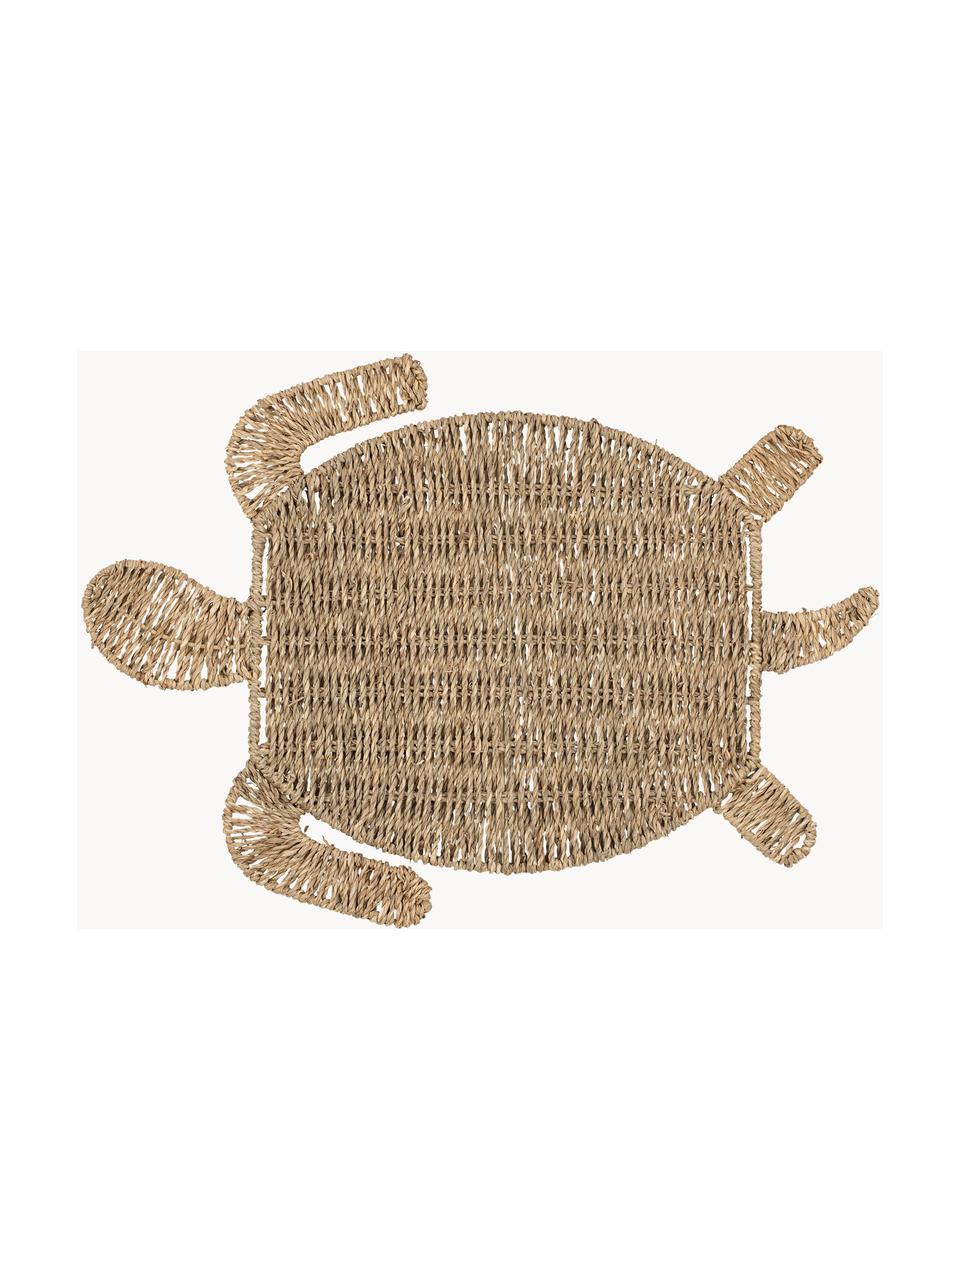 Placemat Sumatra van zeegras in schildpad vorm, Zeegras, Beige, L 48 x B 36 cm